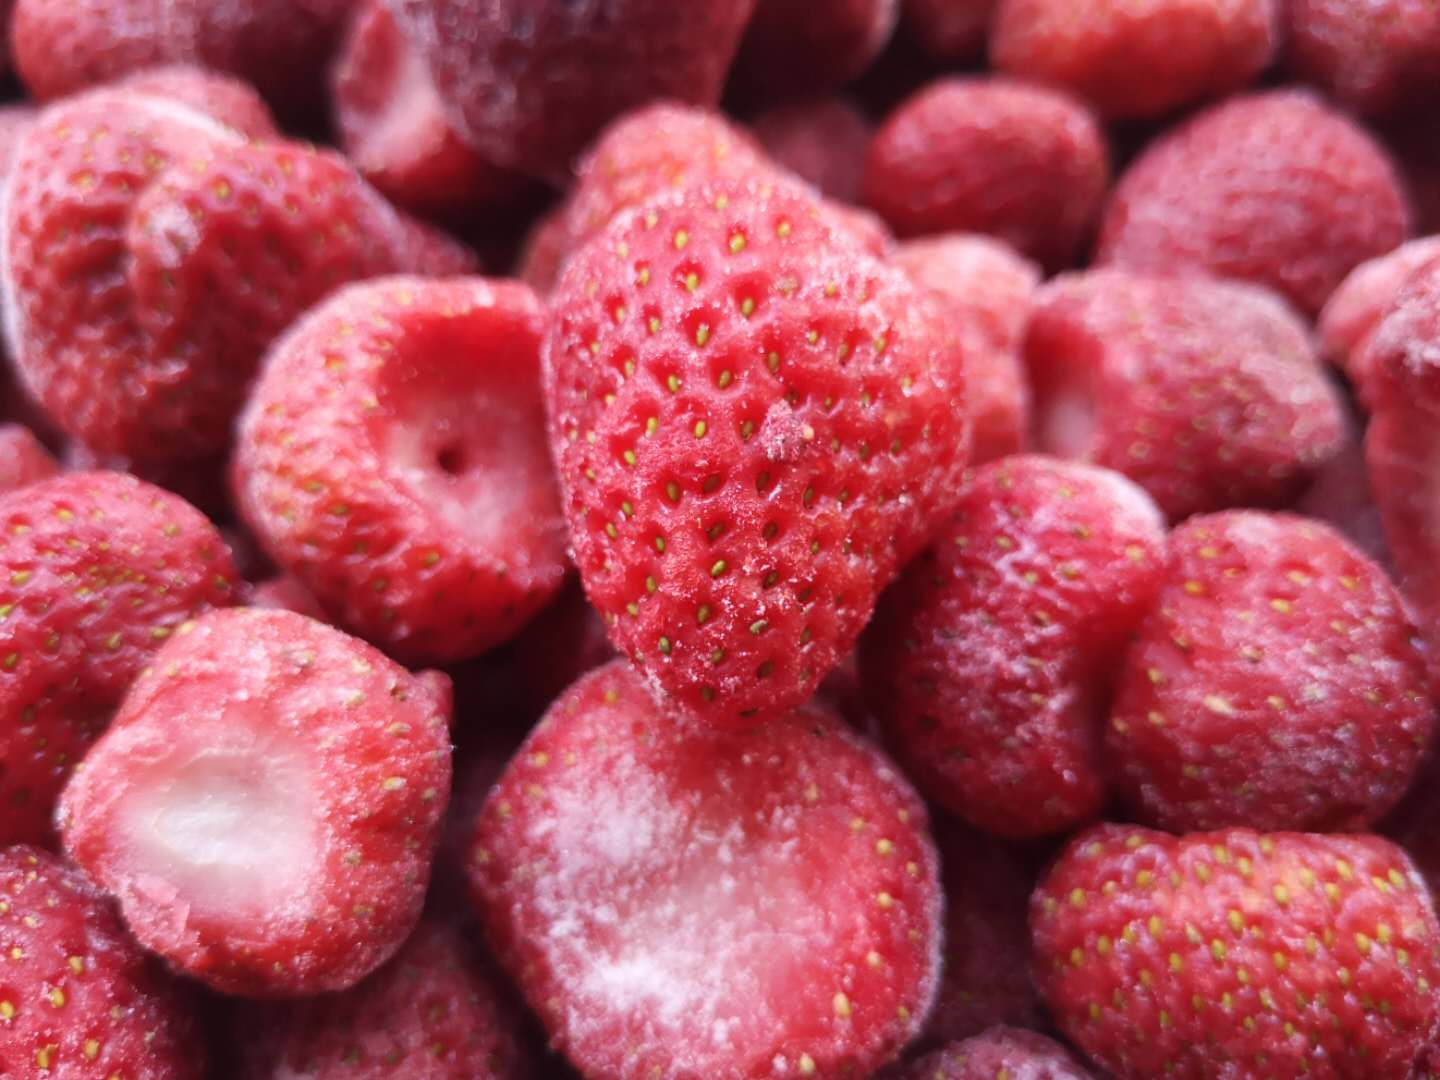  供应工厂直供鲜果速冻冷冻美十三草莓10kg/箱散装果汁果酱原料供应